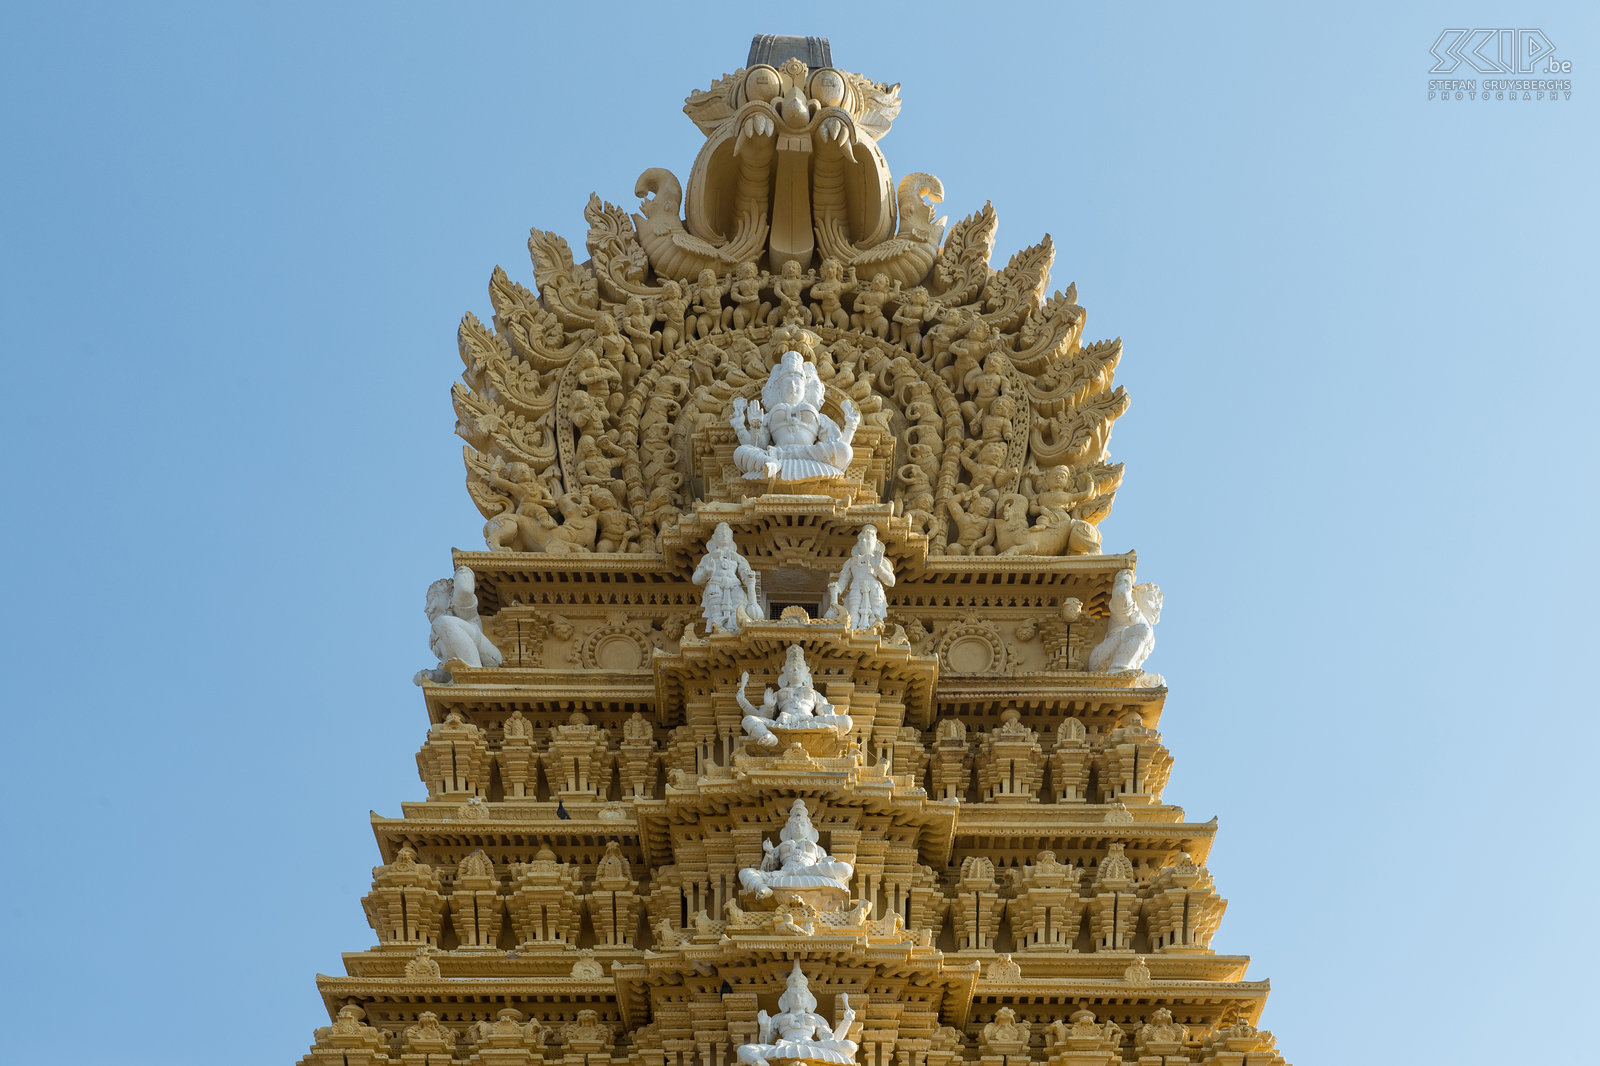 Mysore - Chumanudi heuvel - Chamundeshwari tempel De Chamundi heuvels bevinden zich 13 km ten oosten van Mysore. De Chamundeshwari tempel ligt op de top van de belangrijkste heuvel. De eerste tempel werd gebouwd in de 2e eeuw, maar de enorme toren werd pas gebouwd in 1827.<br />
 Stefan Cruysberghs